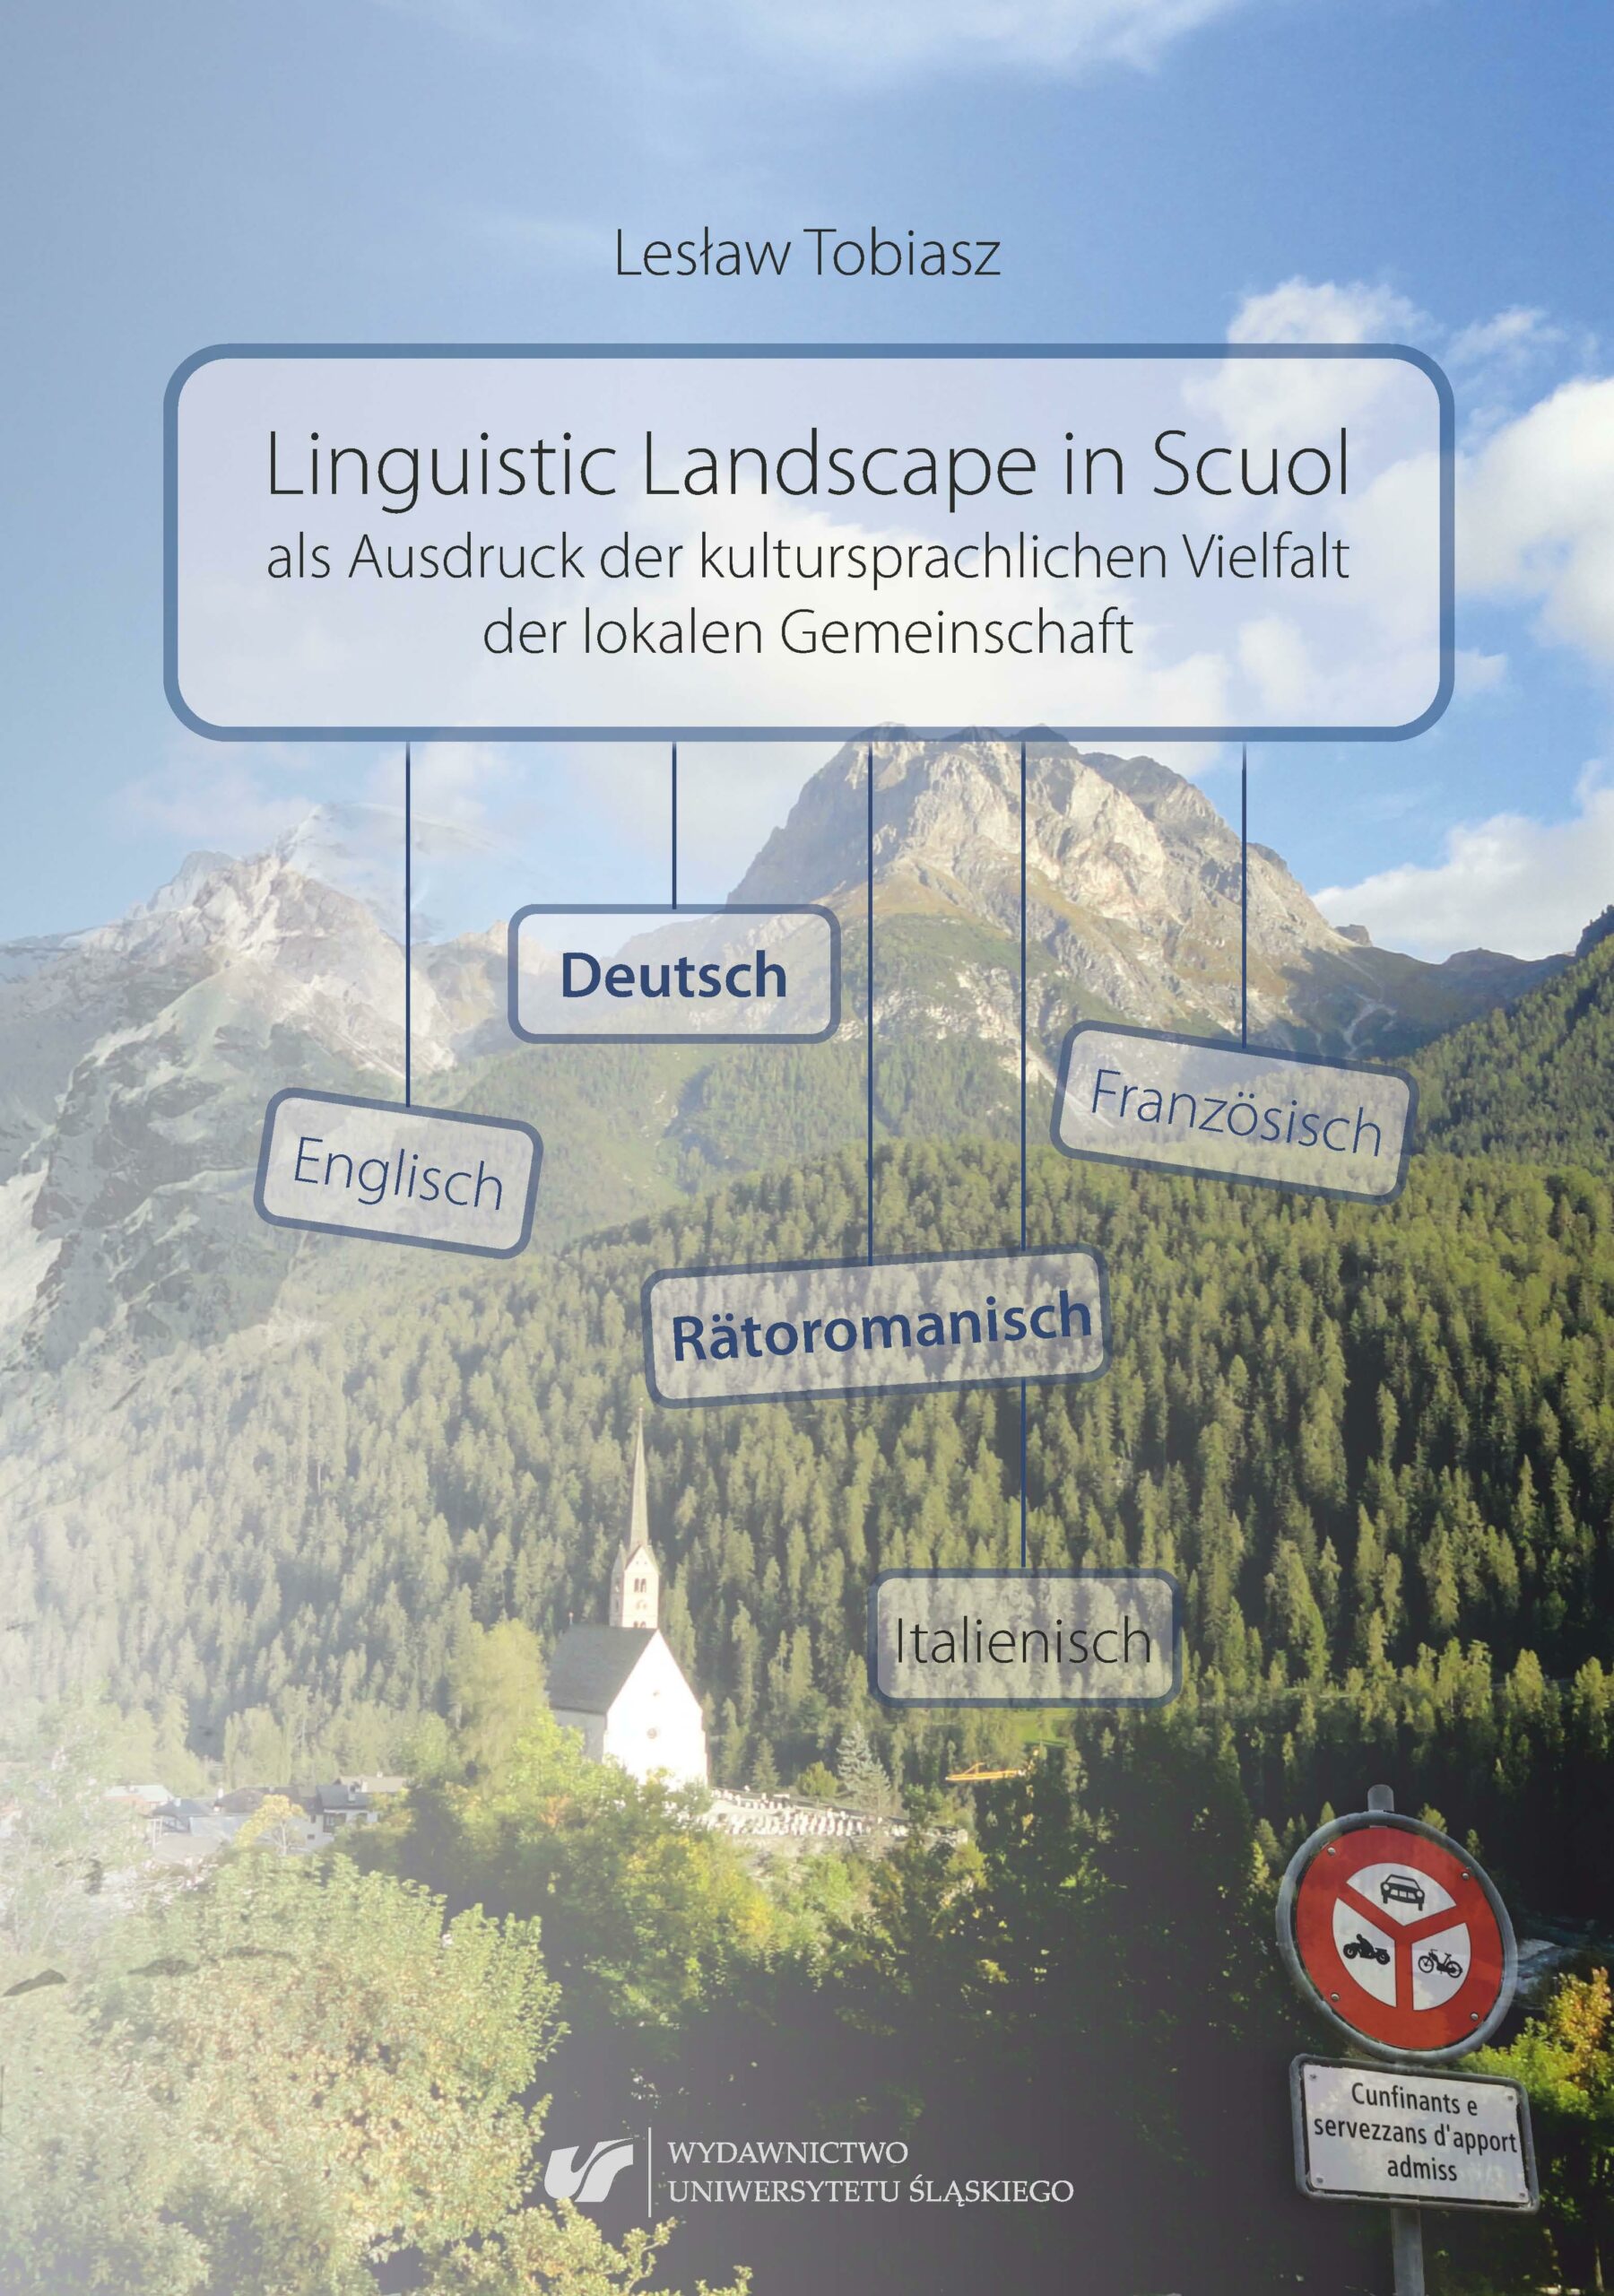 Lesław Tobiasz Linguistic Landscape in Scuol als Ausdruck der kultursprachlichen Vielfalt der lokalen Gemeinschaft